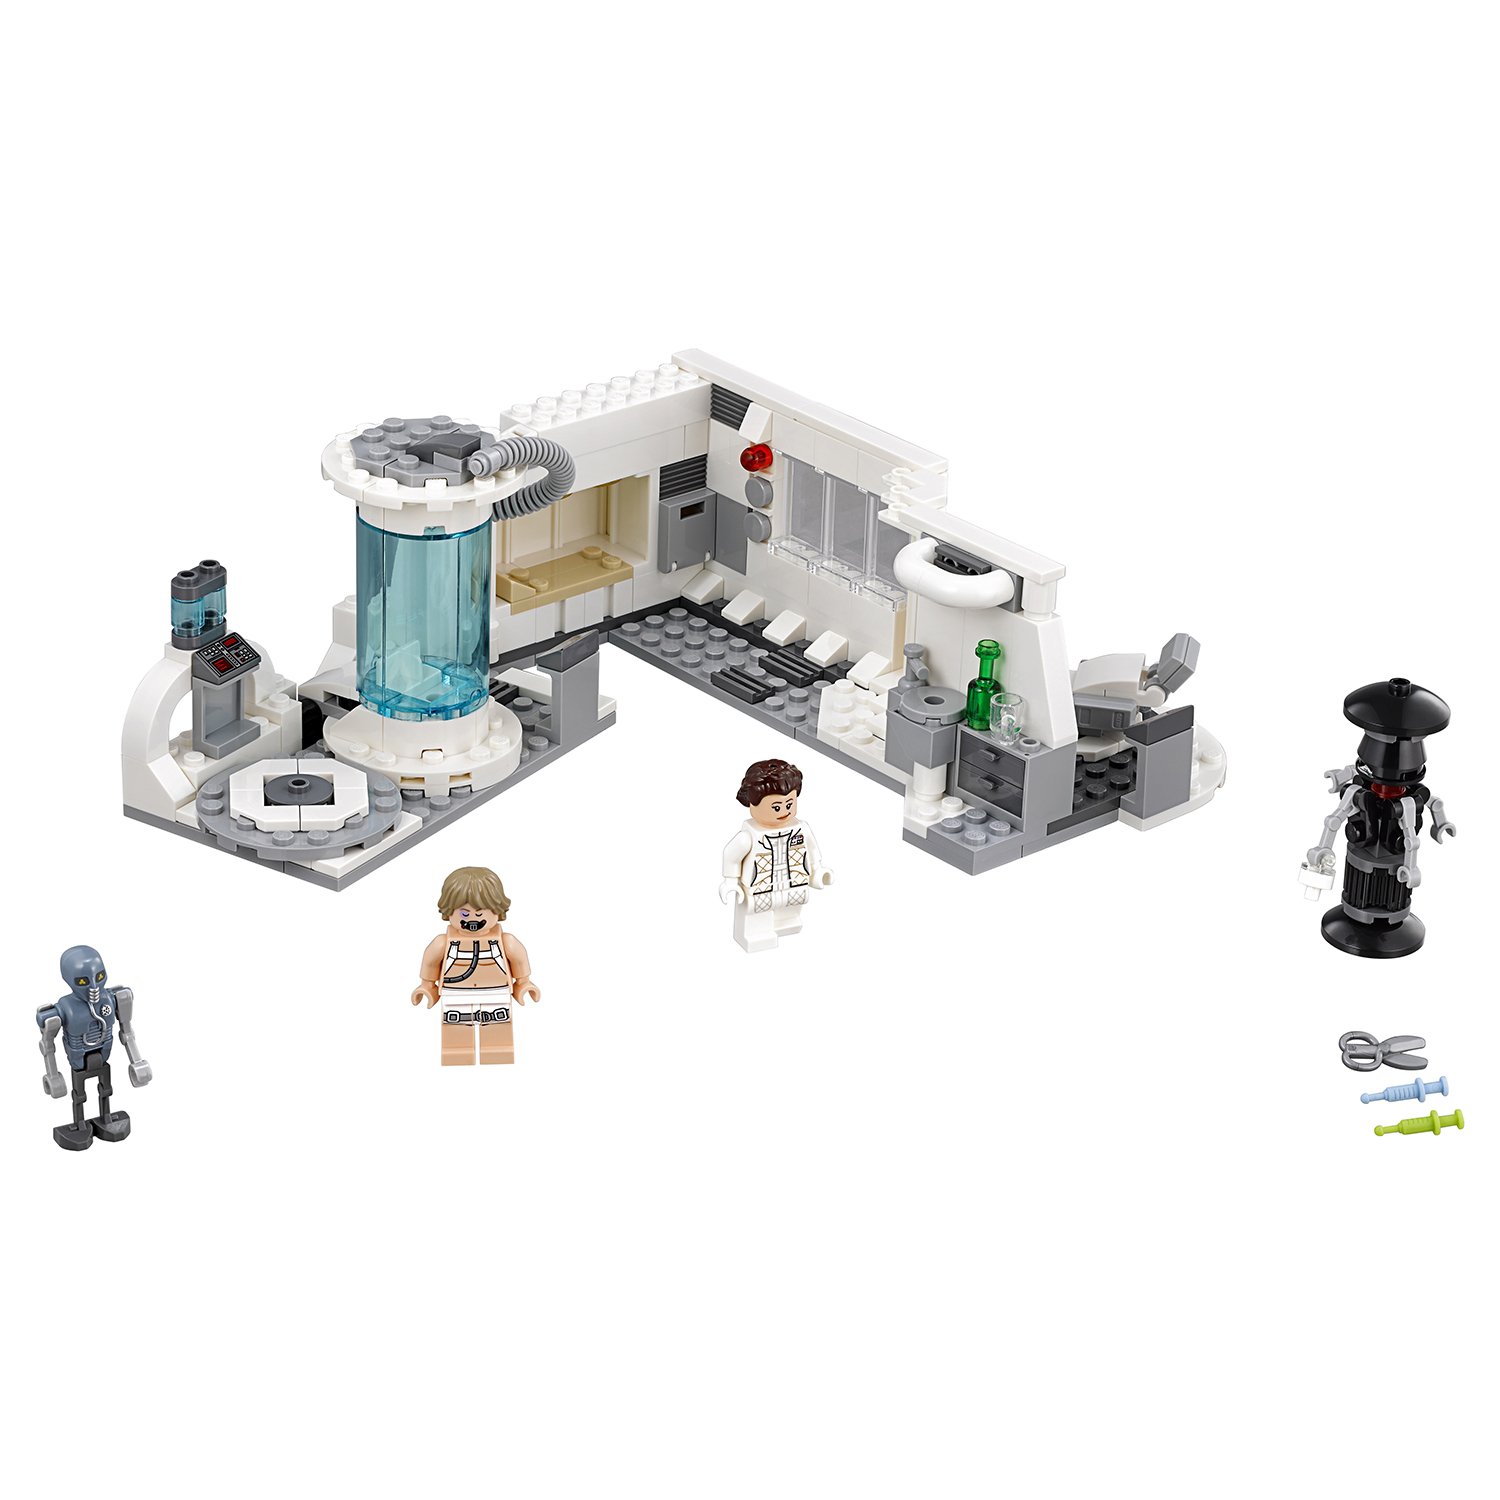 Спасение Люка на планете Хот LEGO 75203